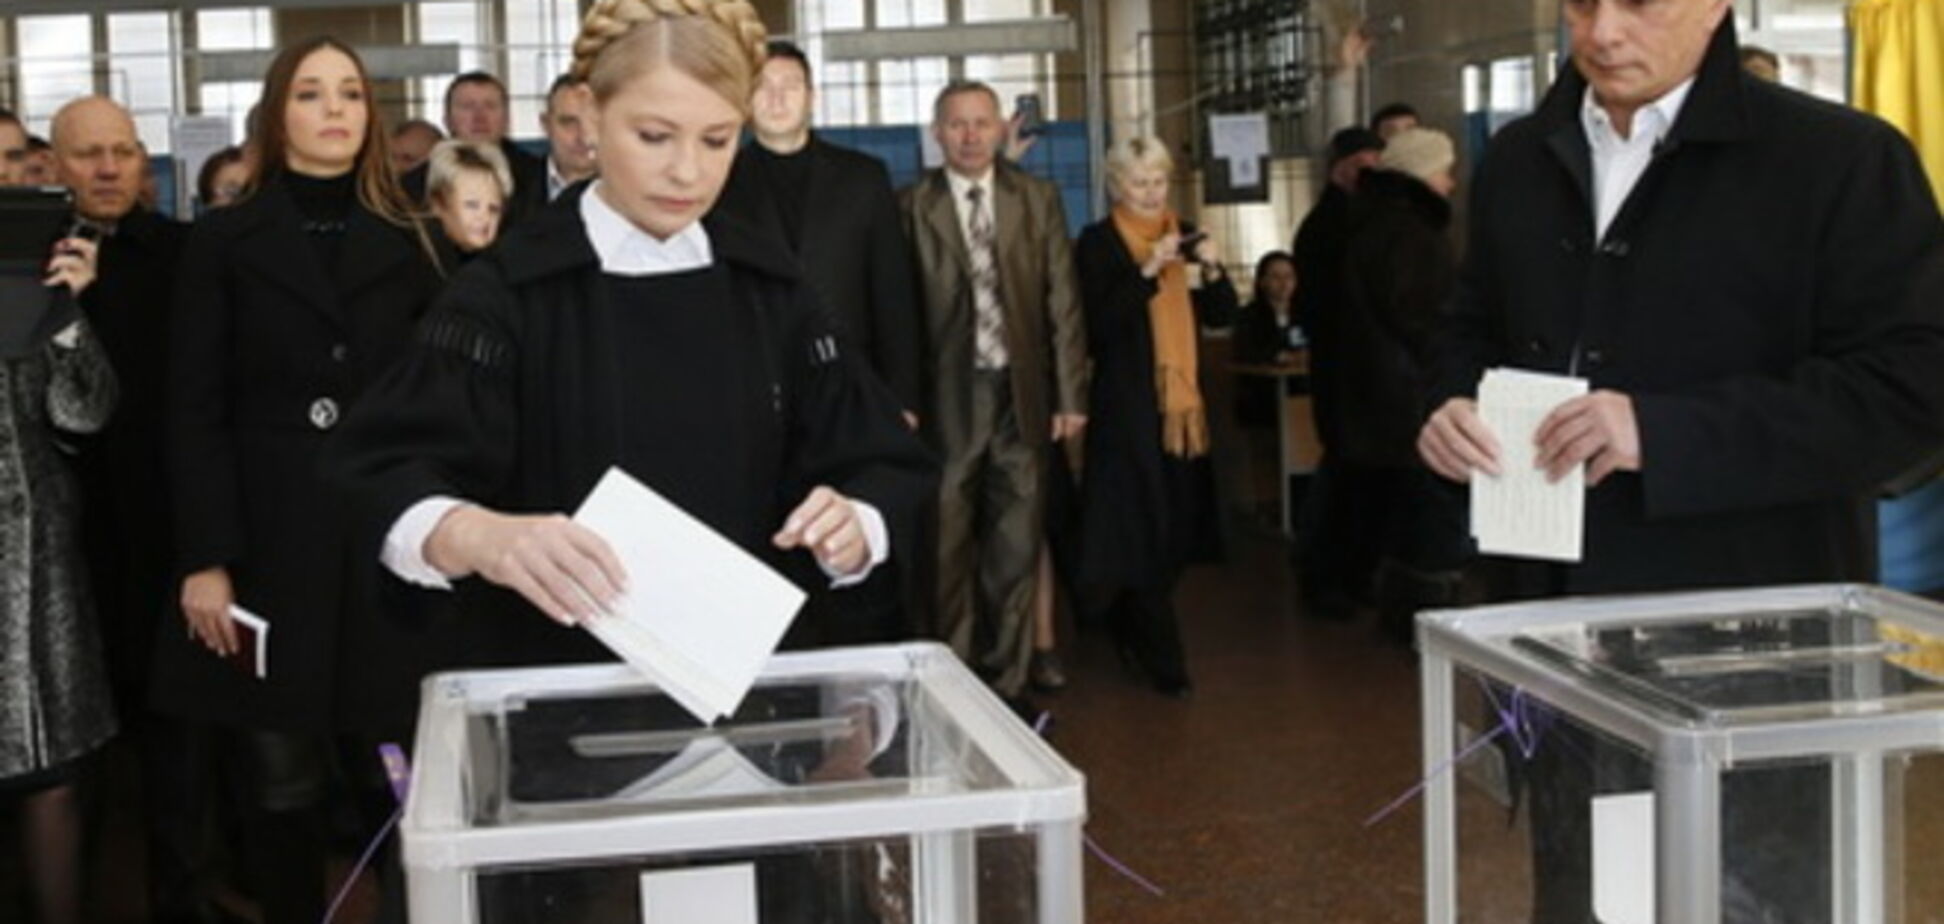 Тимошенко с 'верой в Украину' проголосовала на избирательном участке в Днепропетровске: опубликовано видео